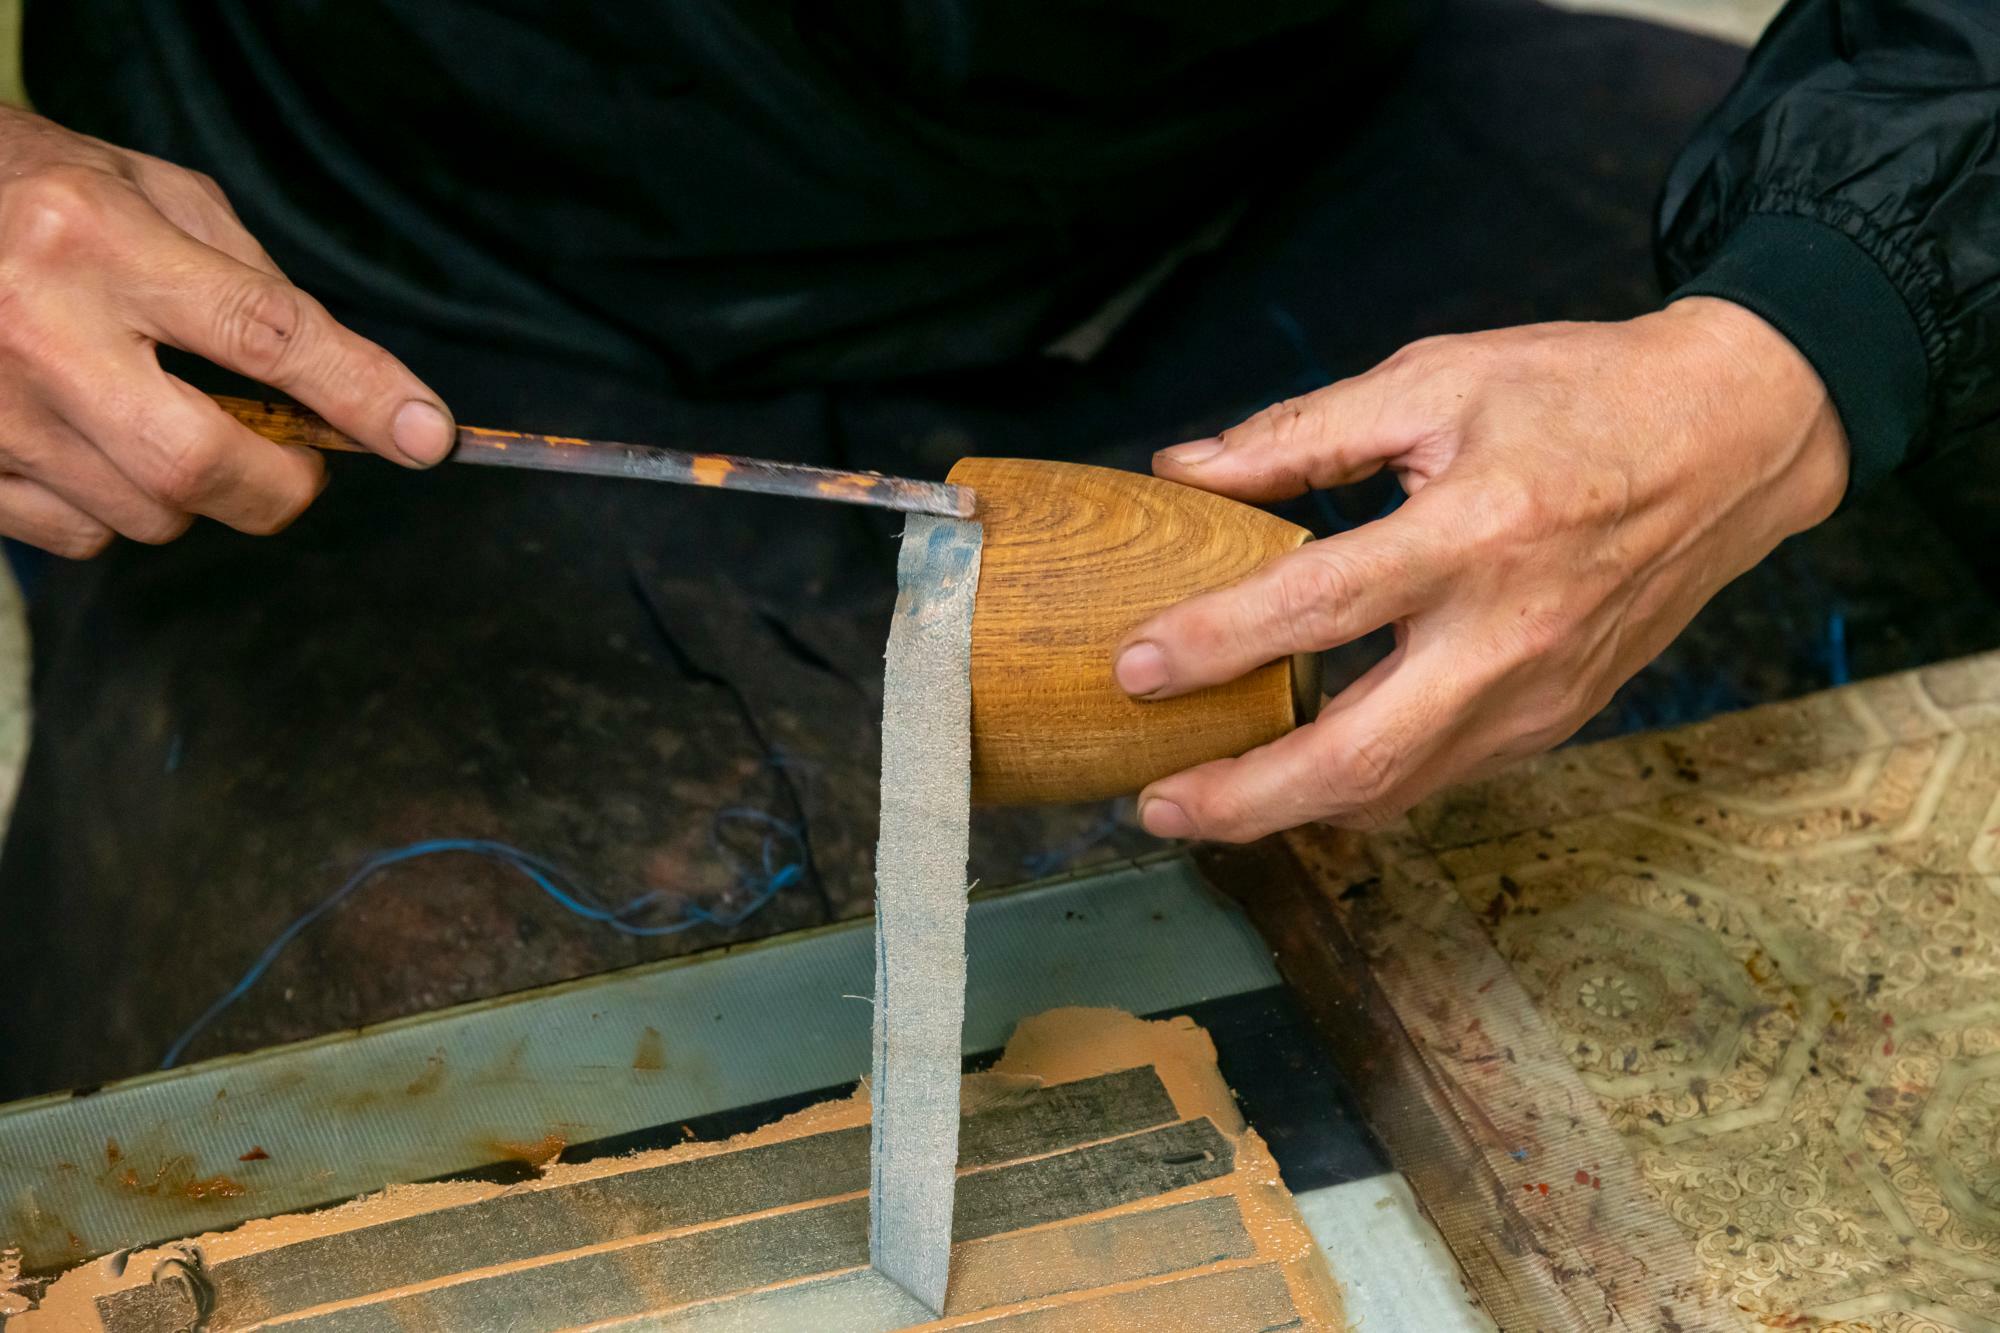 輪島塗の下地職人の方の手元。下地塗は木地の継ぎ目や節を補正して、痛みやすい部分を補強し、丈夫で緻密な塗肌を作る工程